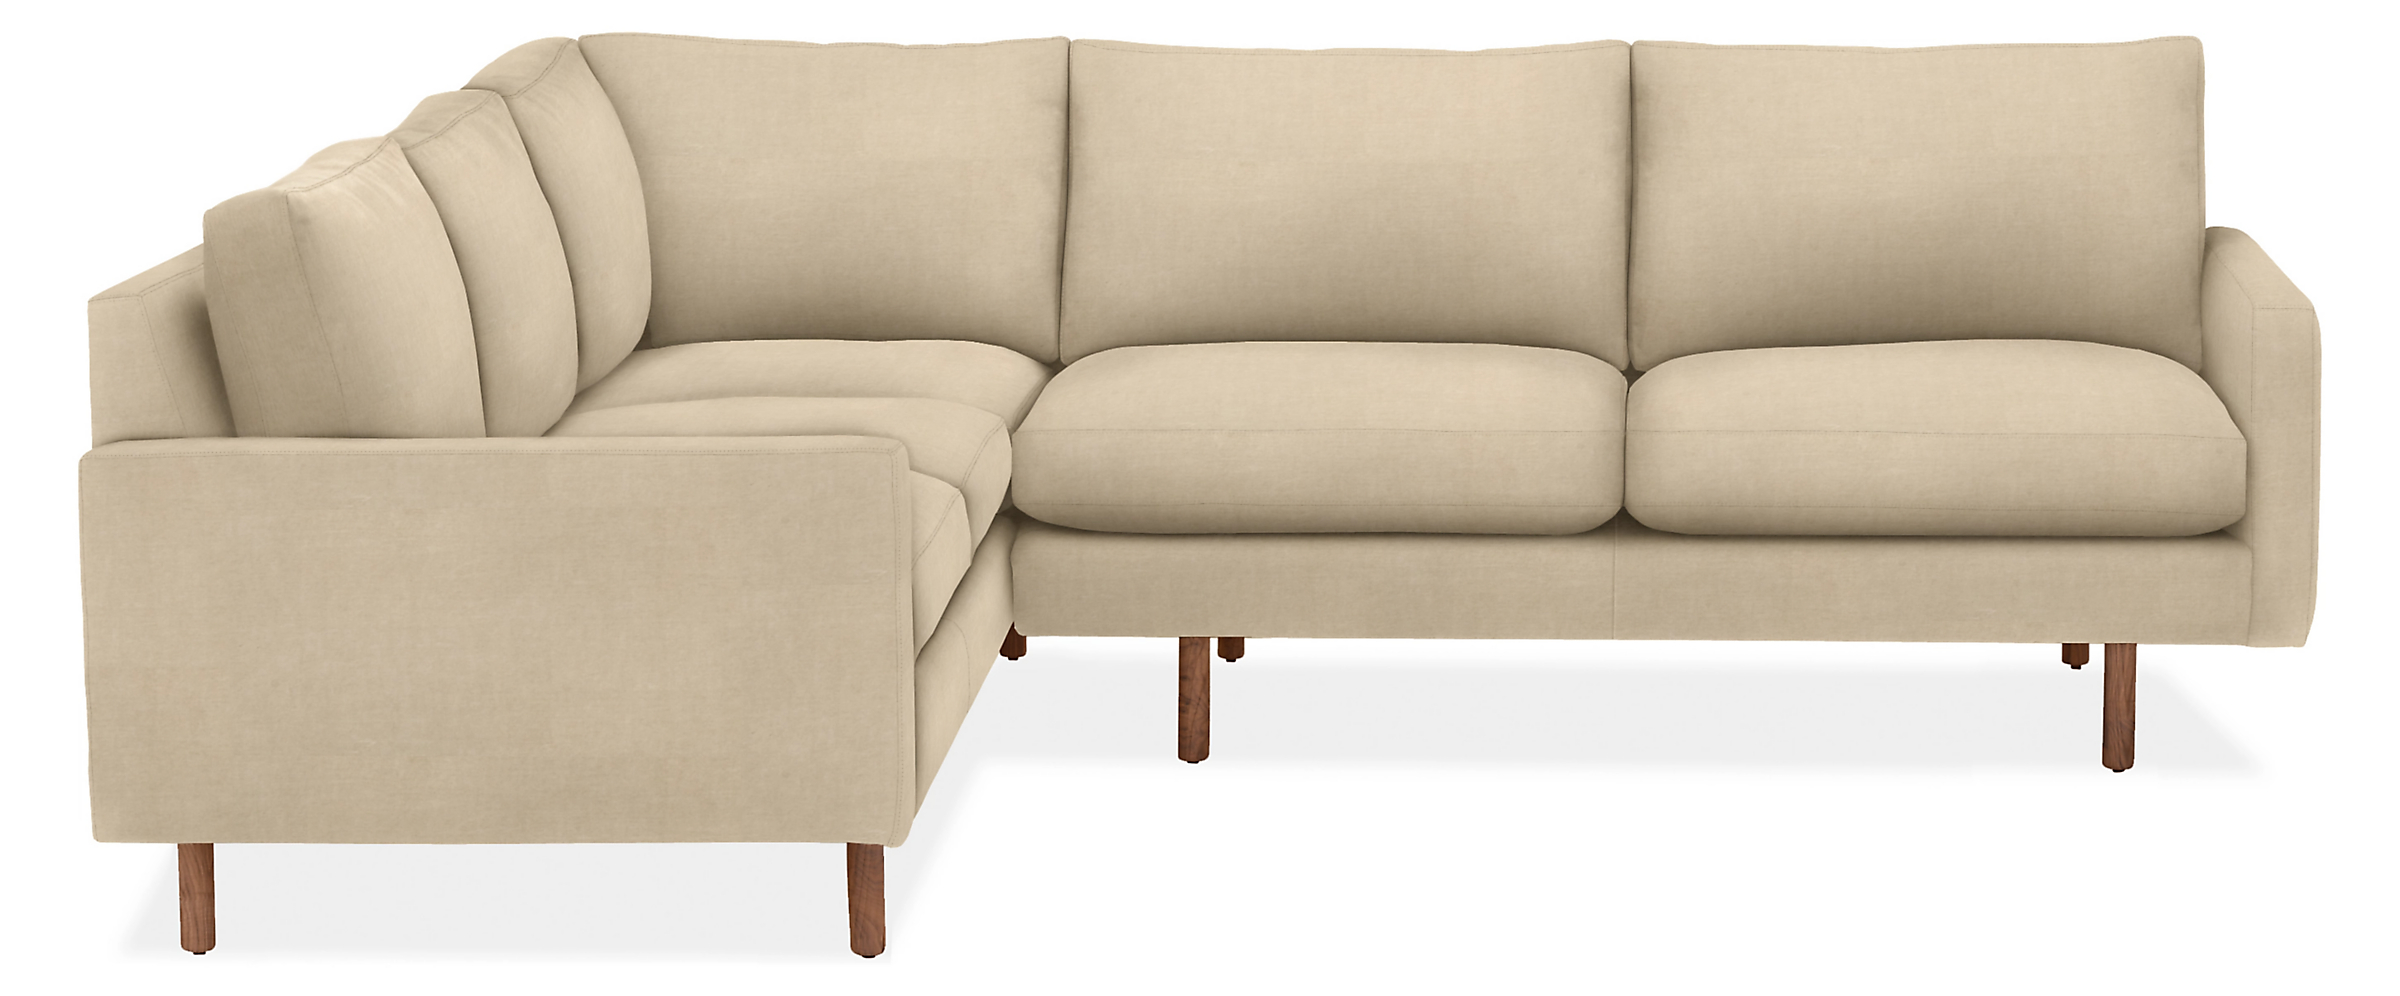 Jasper 92x91" Two-Piece w/Left-Arm Corner Sofa in View Wheat with Walnut Legs